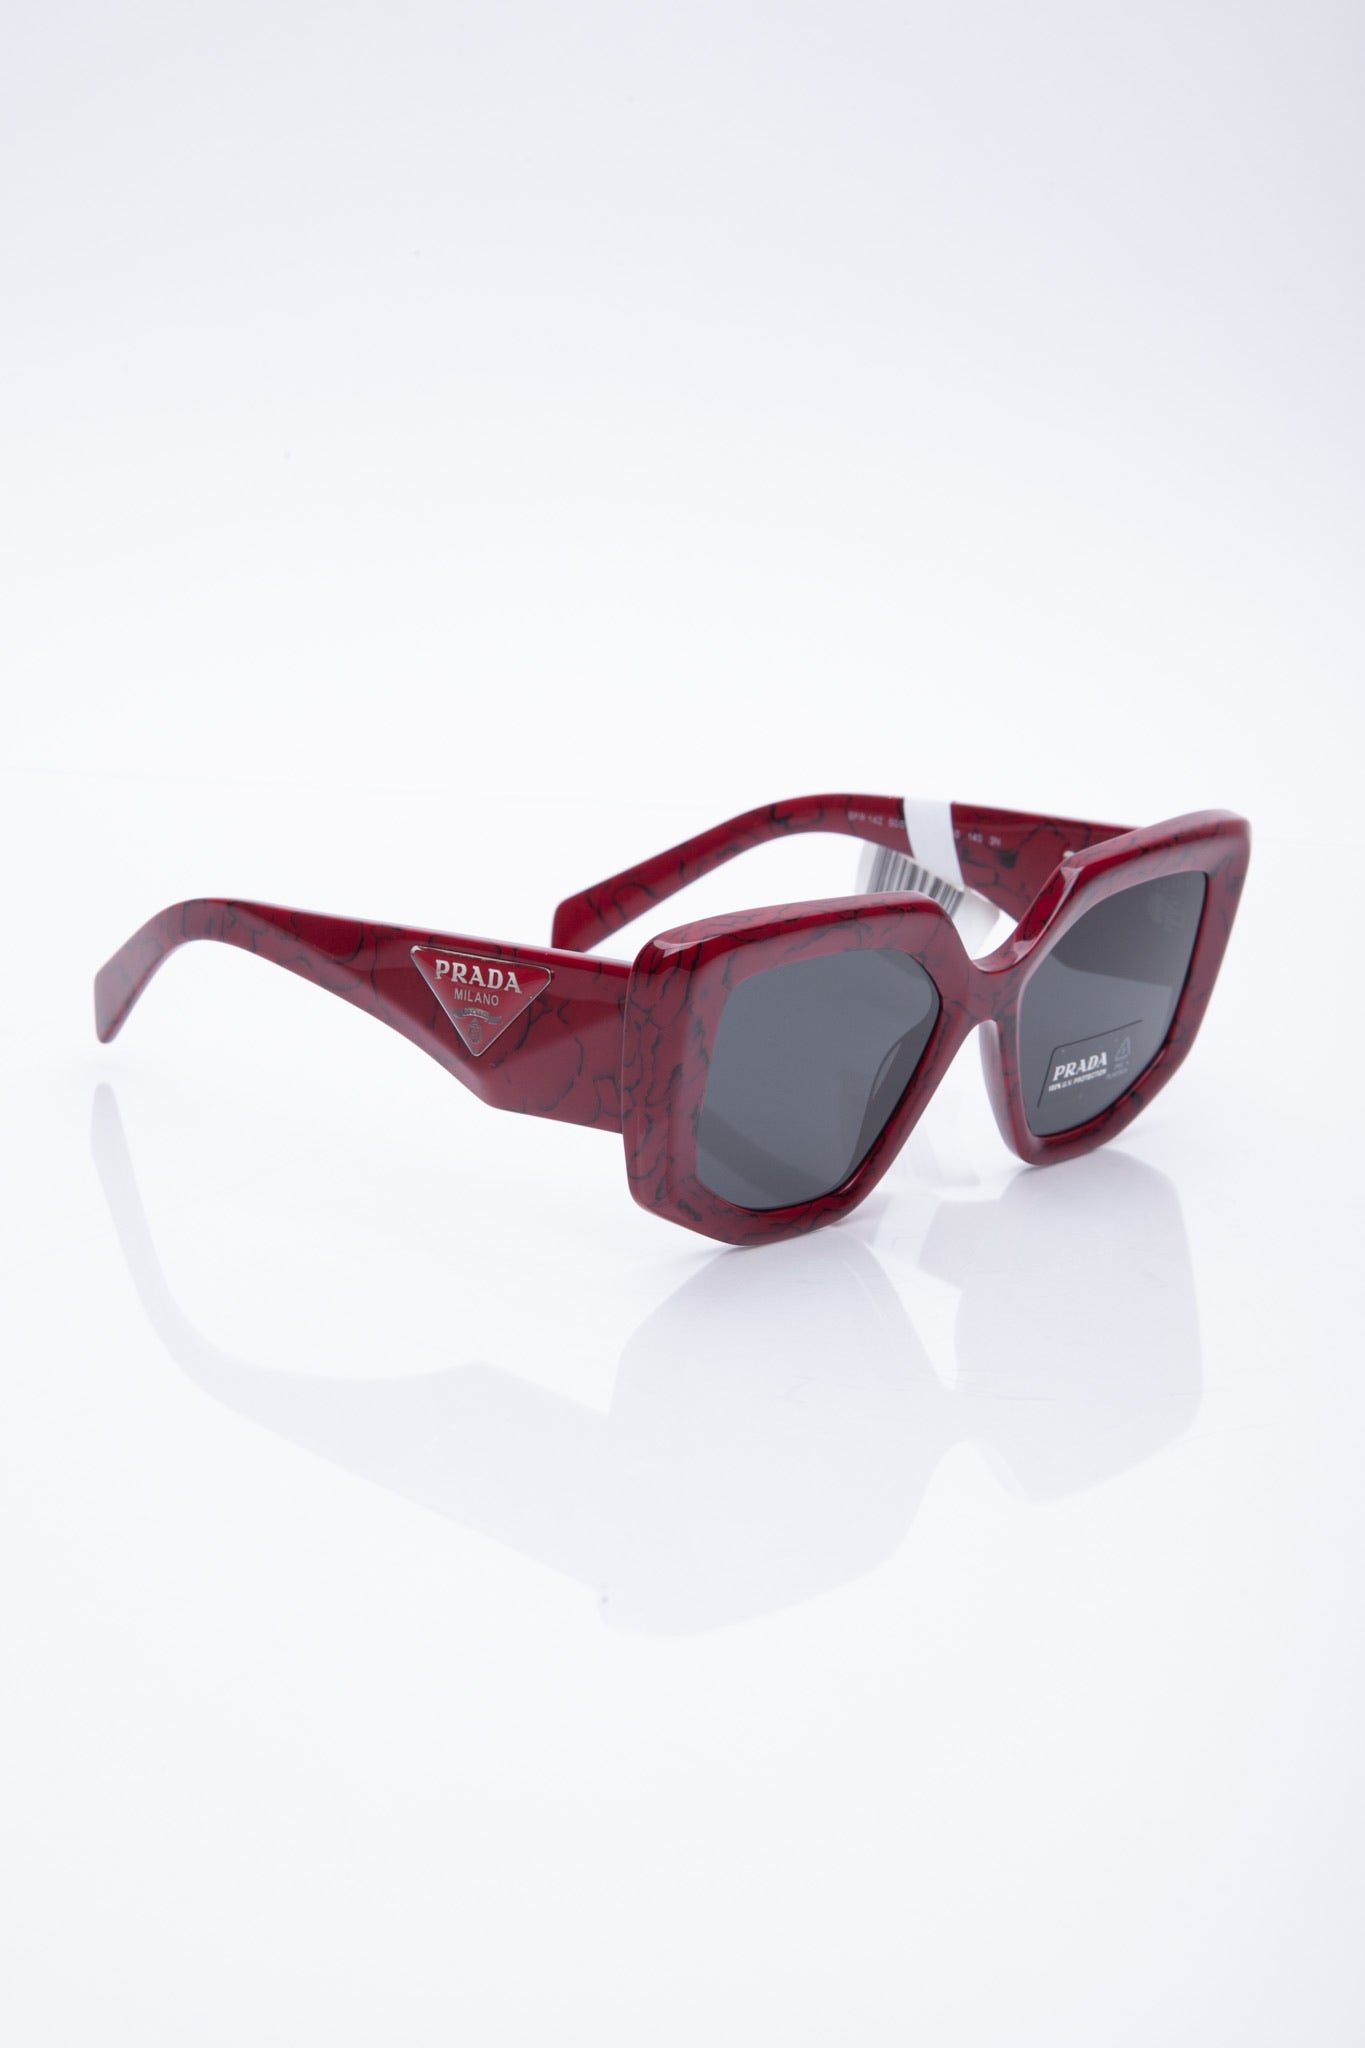 Prada Sunglasses (New)